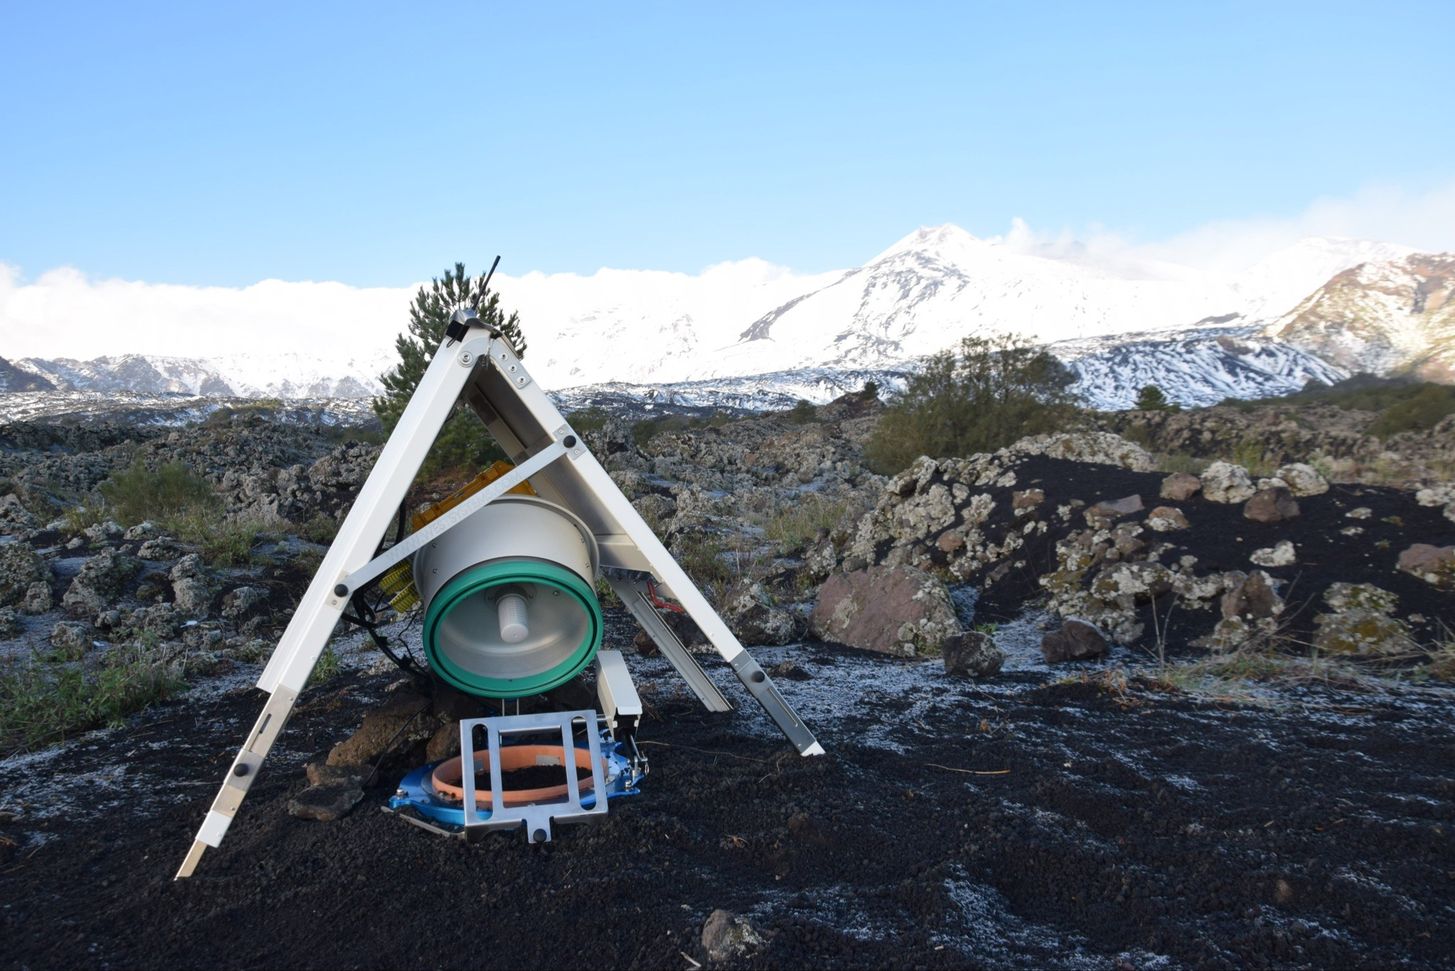 La camera d’accumulo fissa-automatica installata sul Mt. Etna - Sicilia, per misure di flussi di CO2 dal suolo